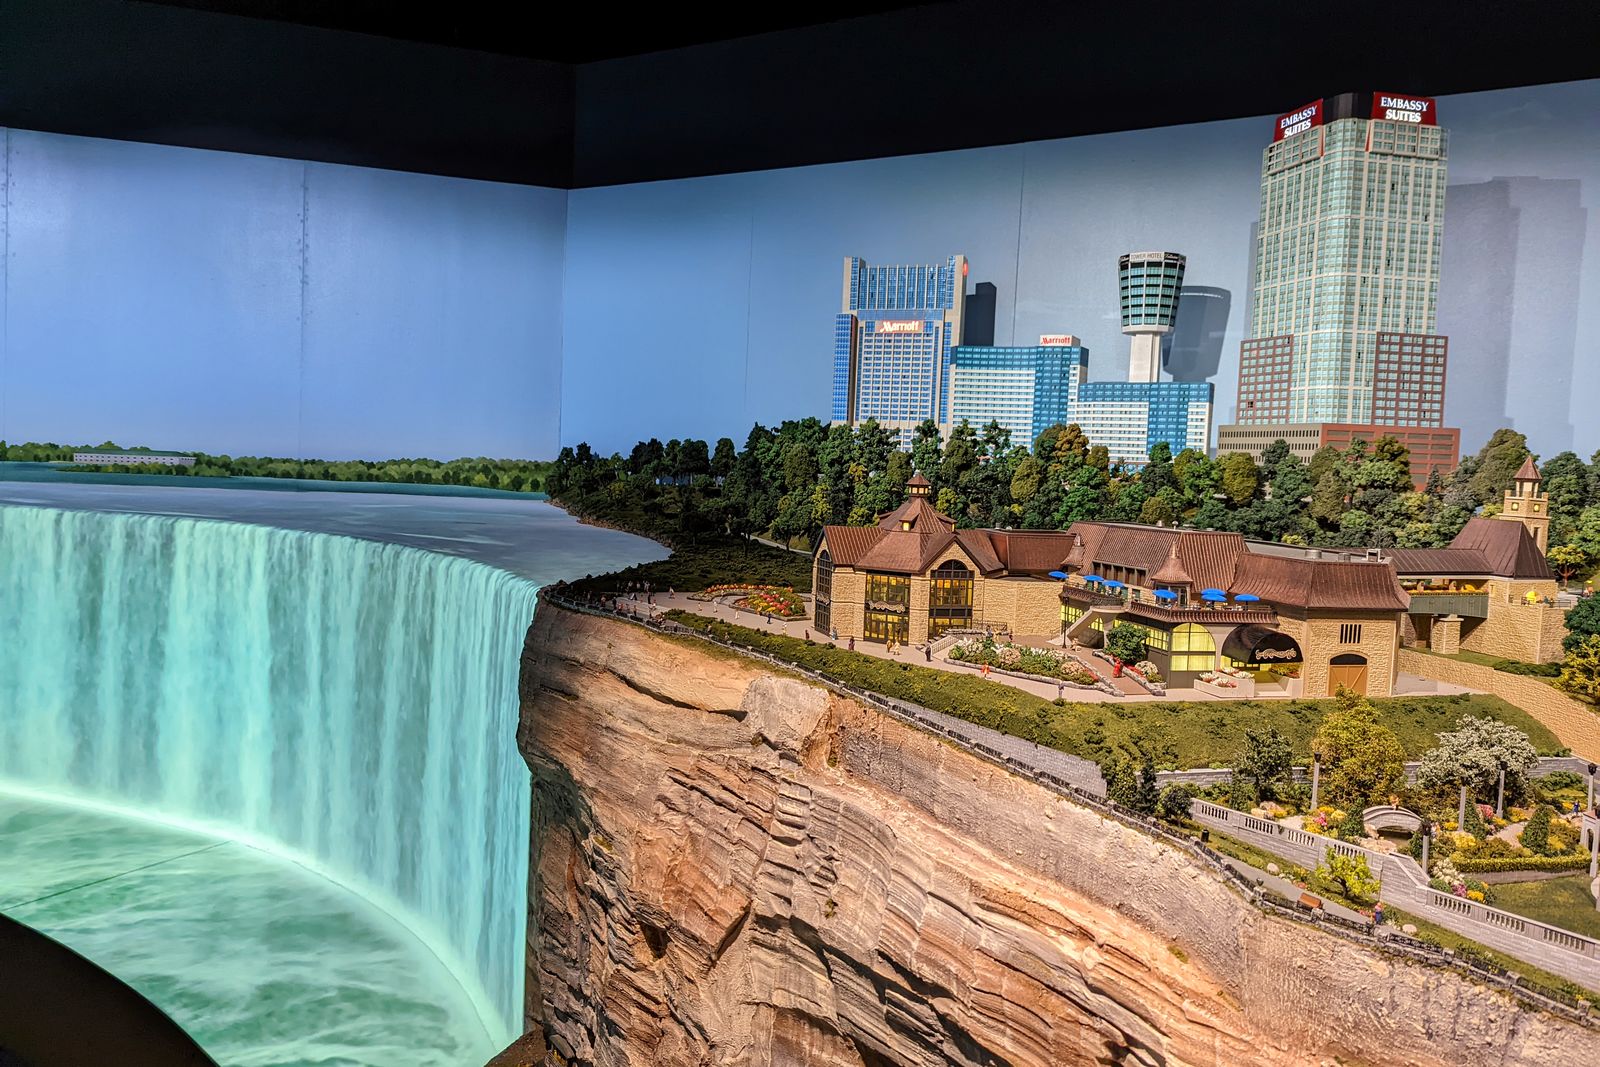 Kanada als Miniaturwelt in der Ausstellung Little Canada in Toronto